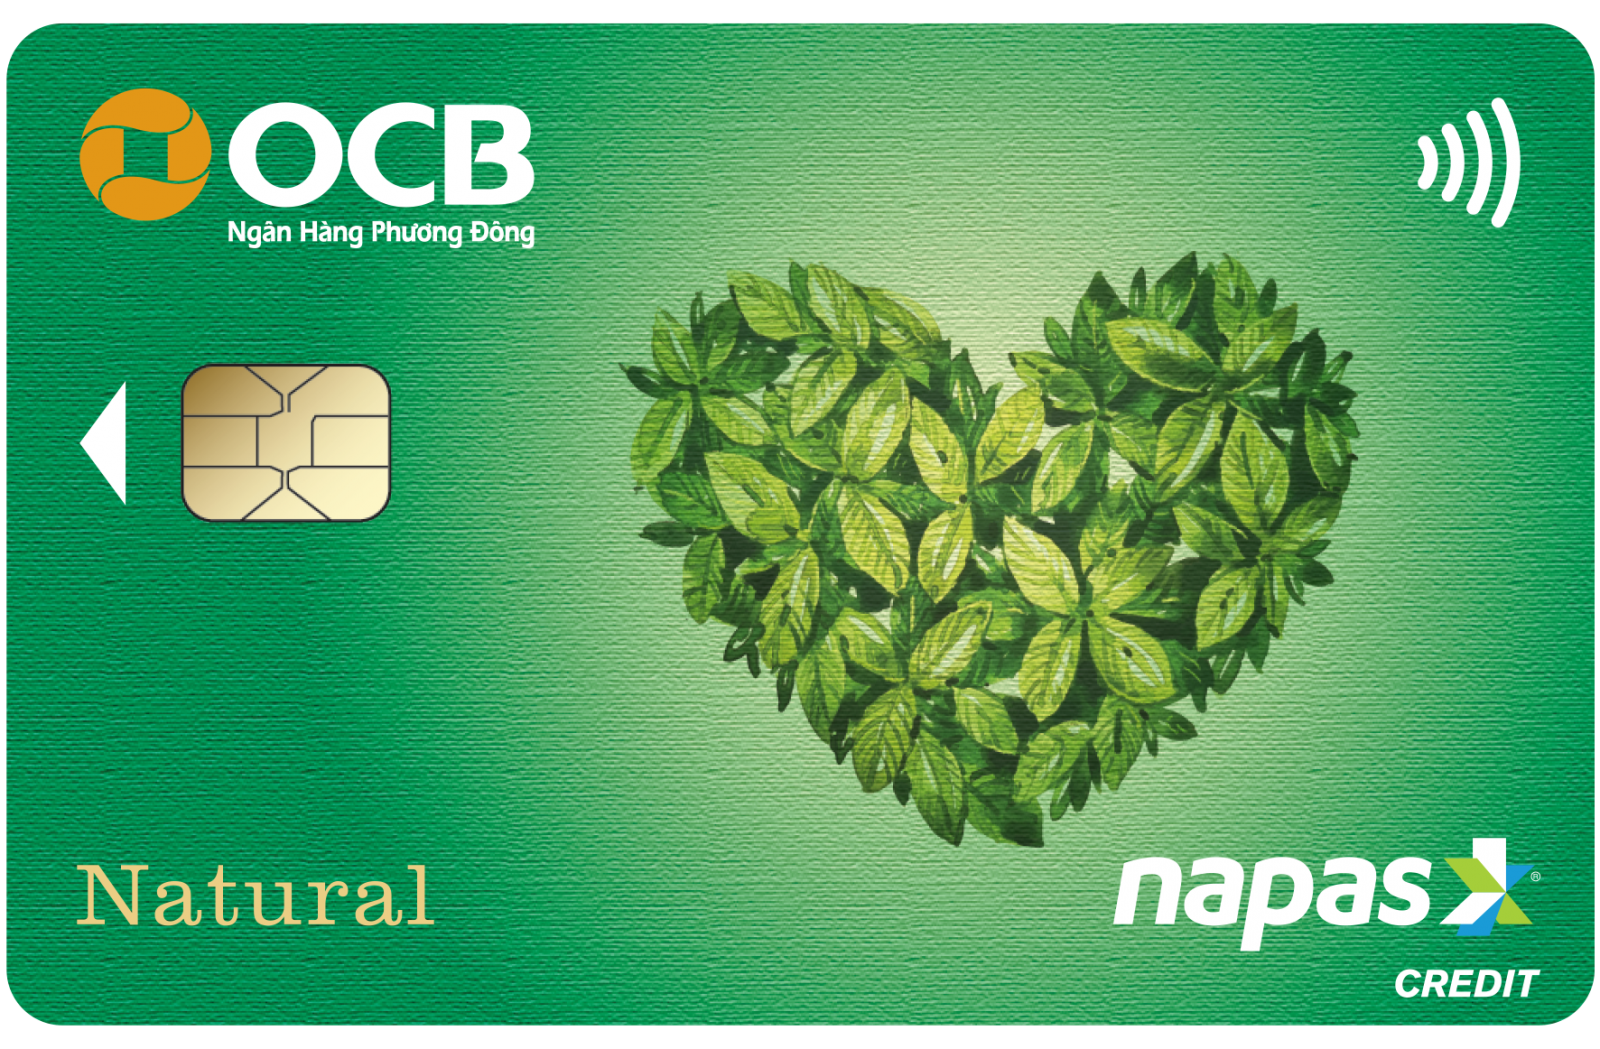 Rút tiền từ thẻ tín dụng OCB Napas có nhiều khuyến mãi